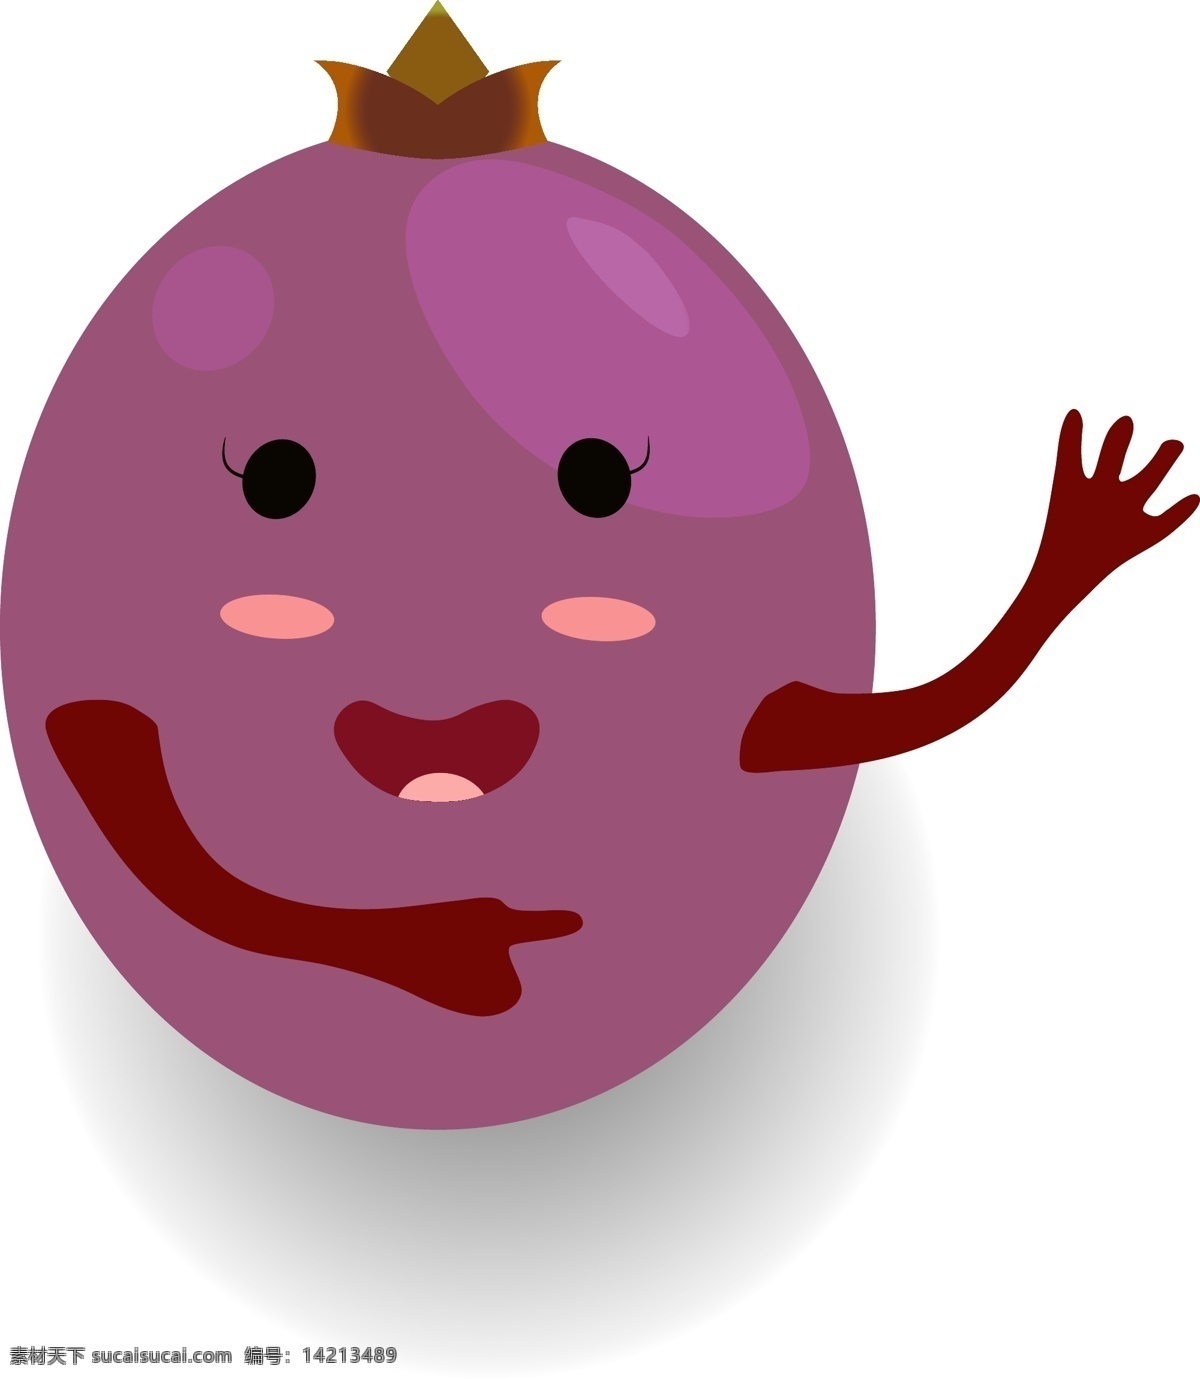 小 清新 可爱 水果 卡通 形象 葡萄 小人 矢量 紫色 矢量素材 提子 卡通水果 卡通葡萄 葡萄小人 水果小人 拟人 水果包装 果盒包装 水果素材 欢迎